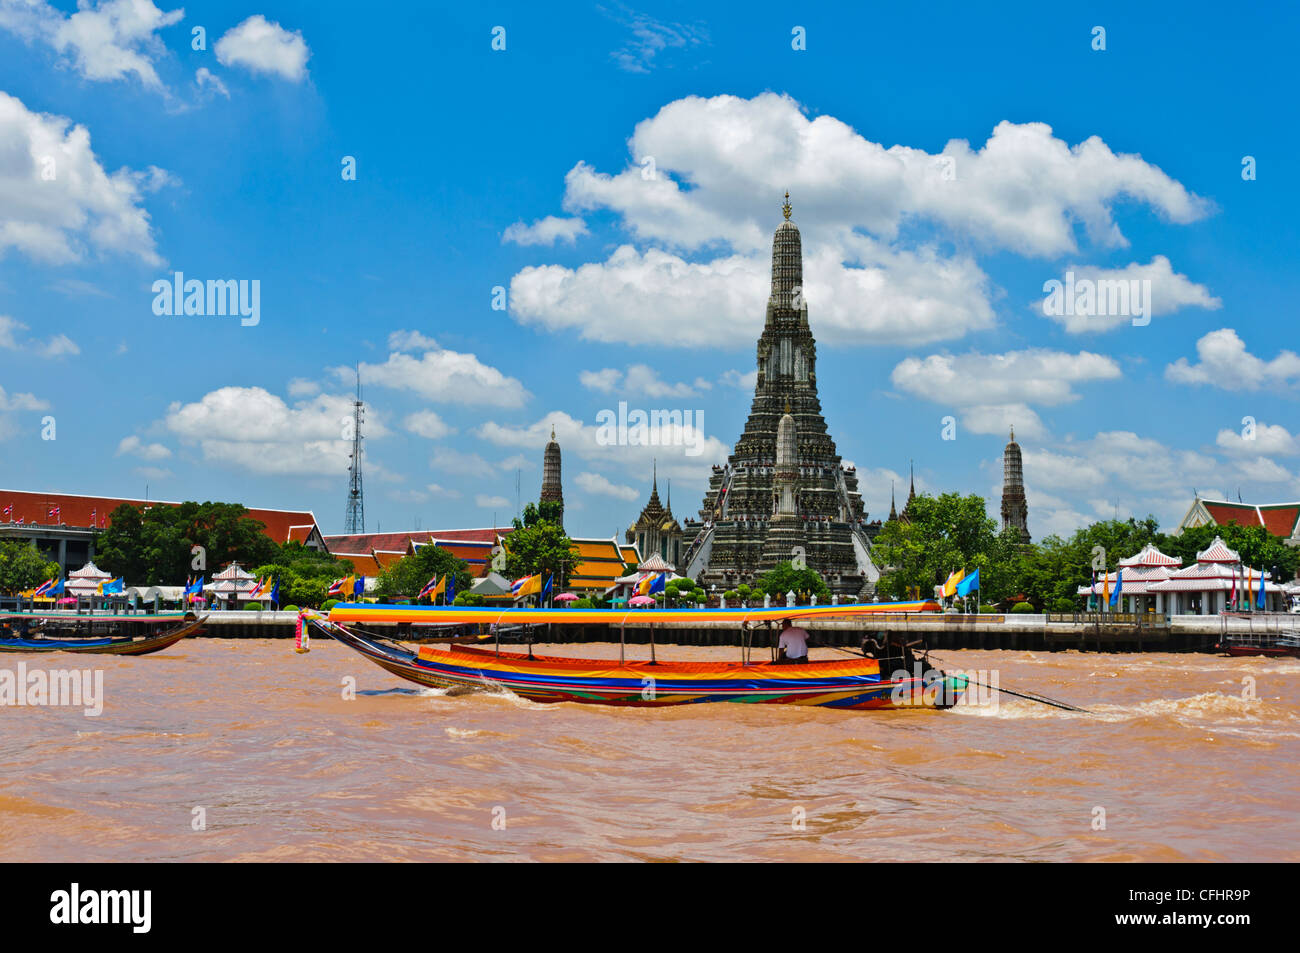 Bateau à longue queue sur la rivière Chao Phraya Wat Arun 'Temple de Dawn' Bangkok Thailande Asie du sud-est Banque D'Images